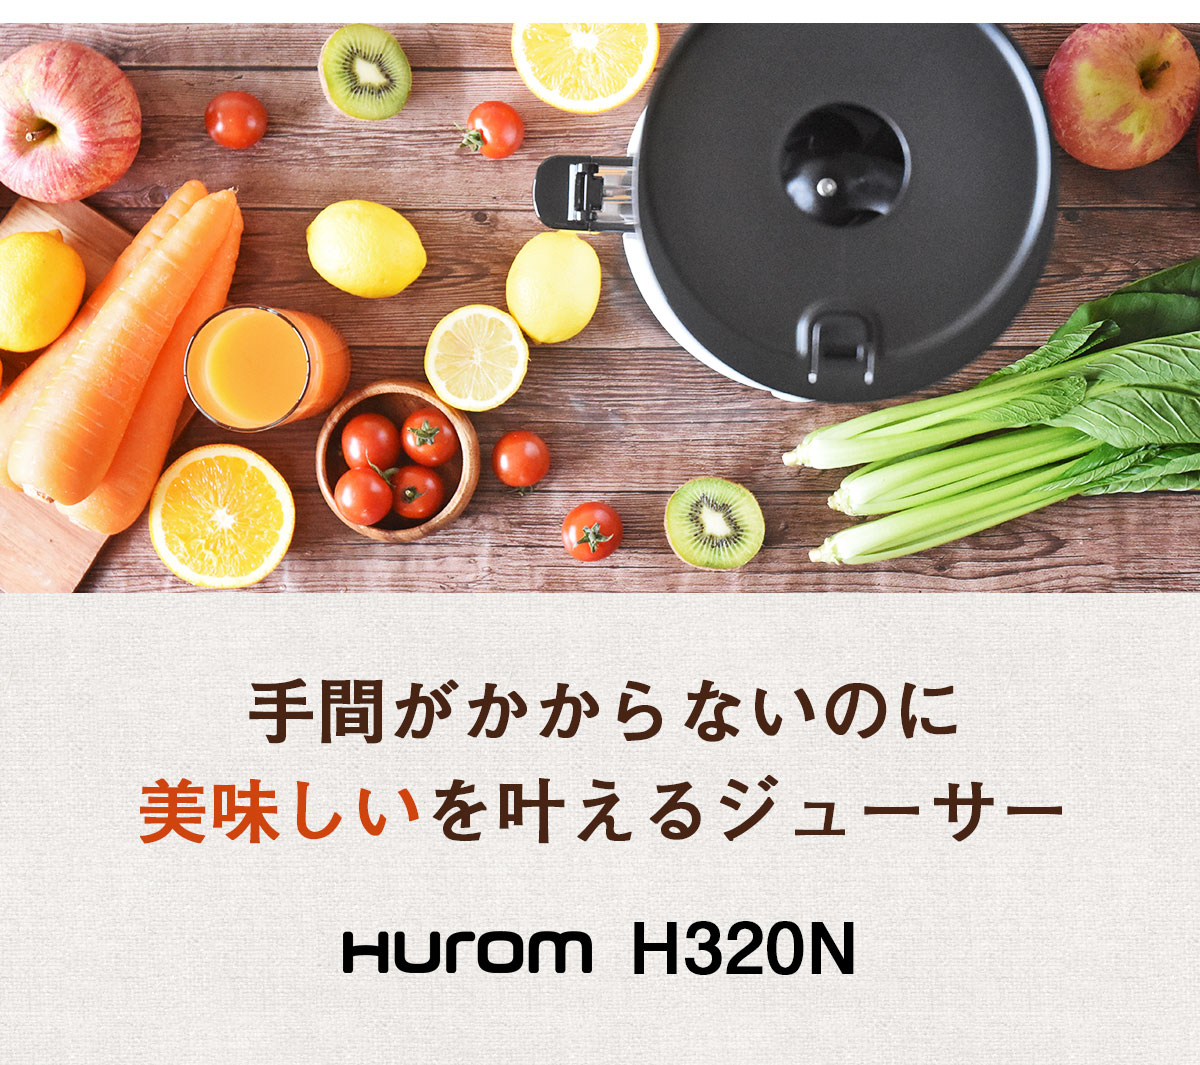 手間がかからないのに美味しいを叶えるジューサー HUROM H320N